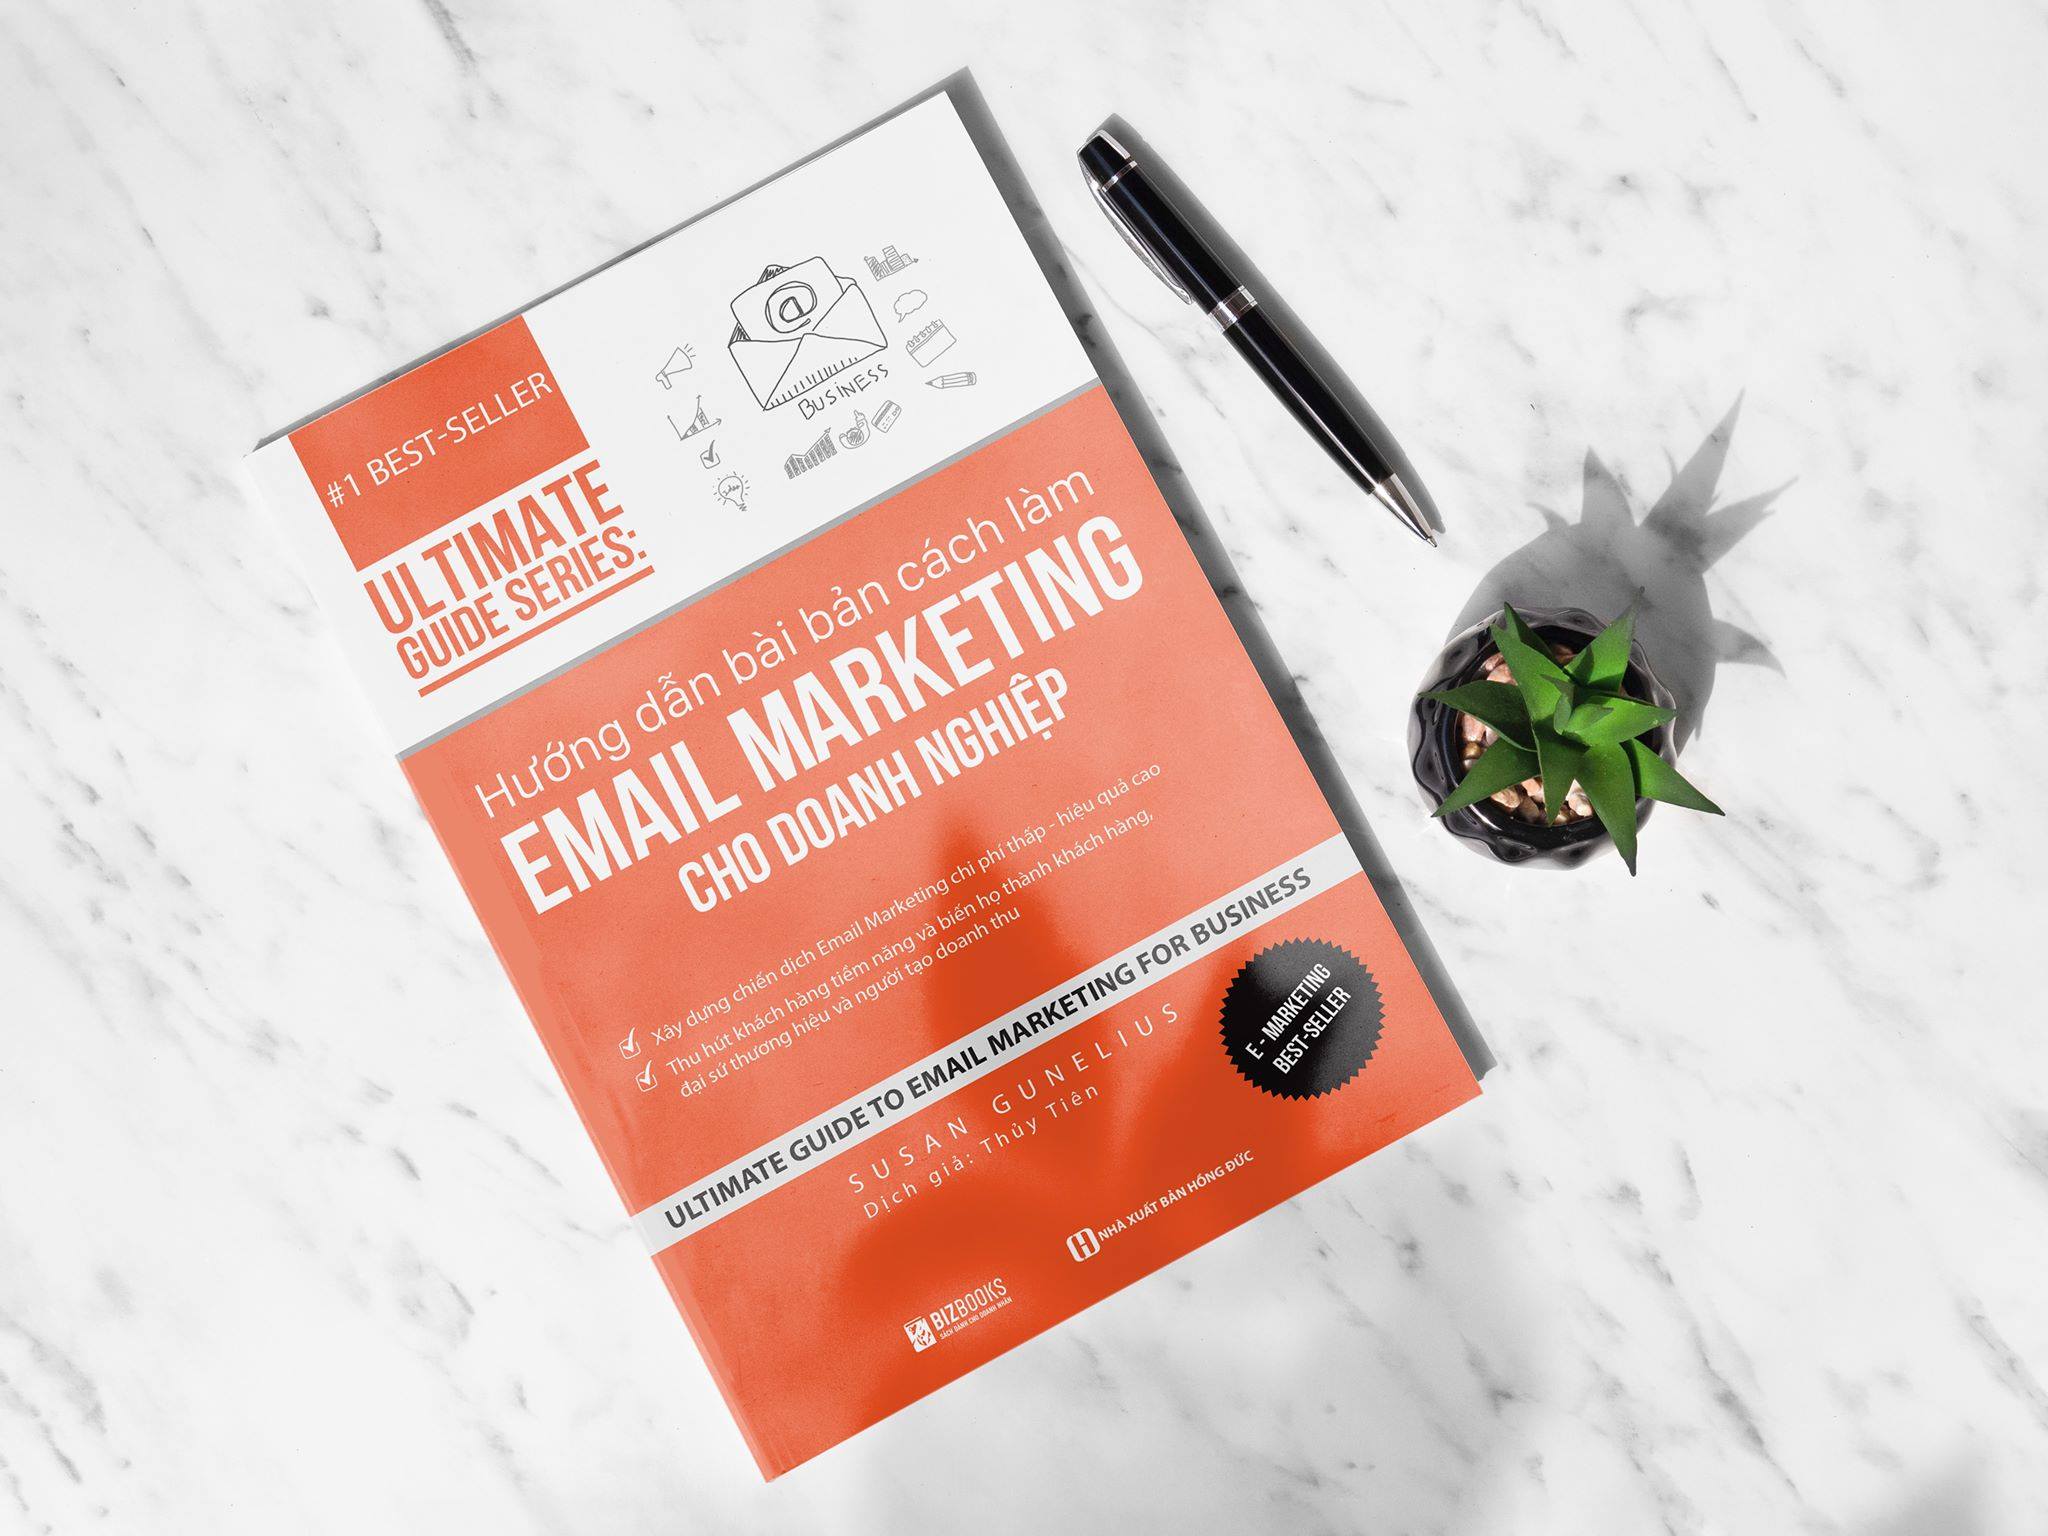 Hướng dẫn bài bản cách làm Email Marketing cho doanh nghiệp | Ultimate Guide Series 5